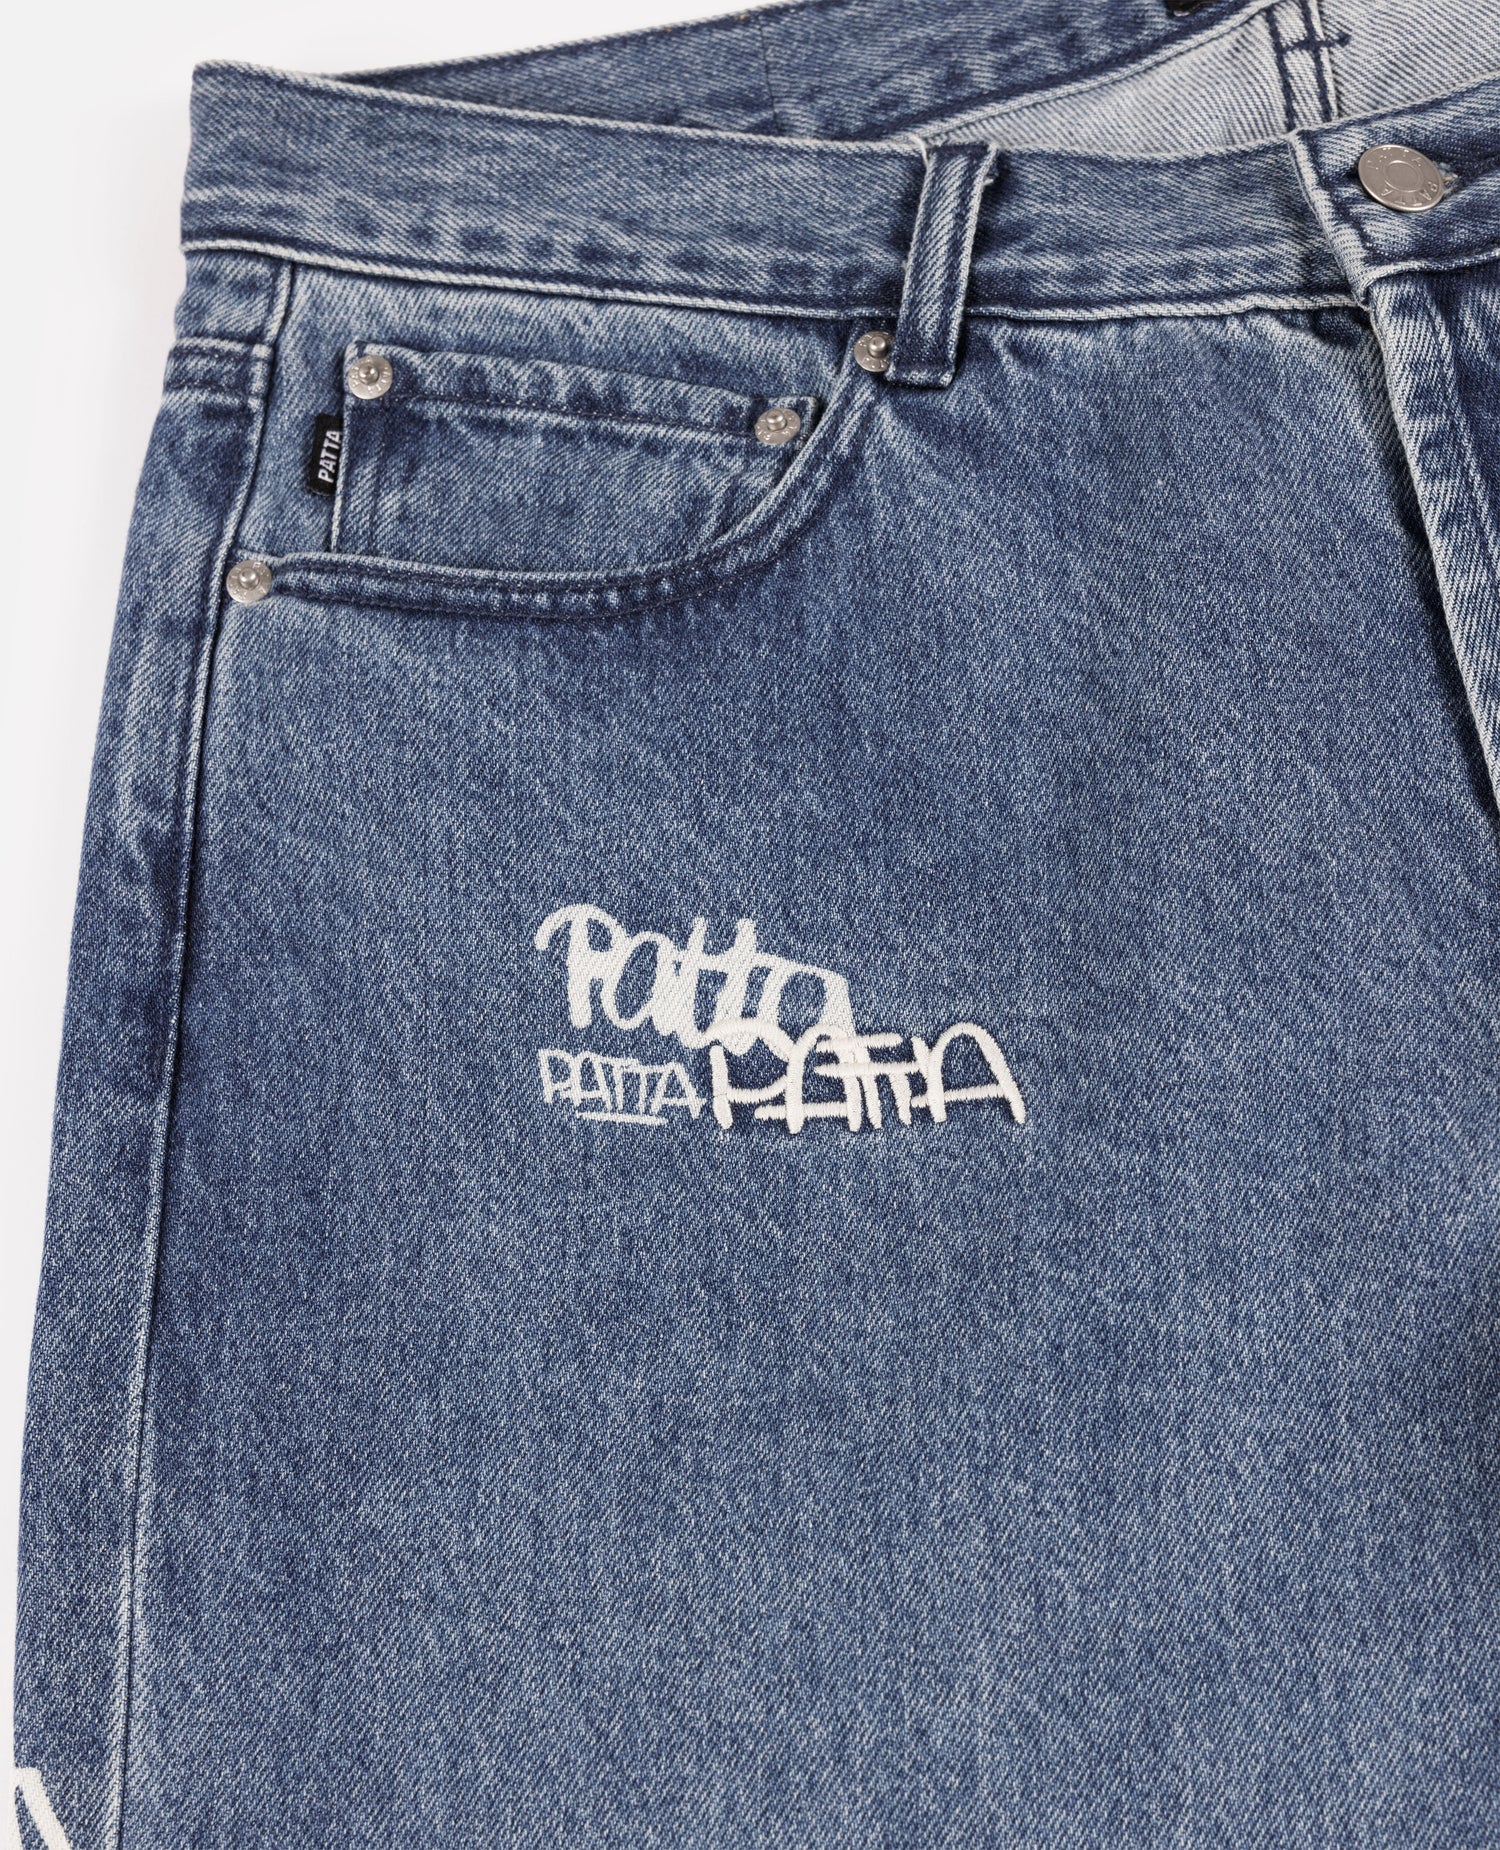 Pantalon en jean Patta Graffiti (bleu clair)